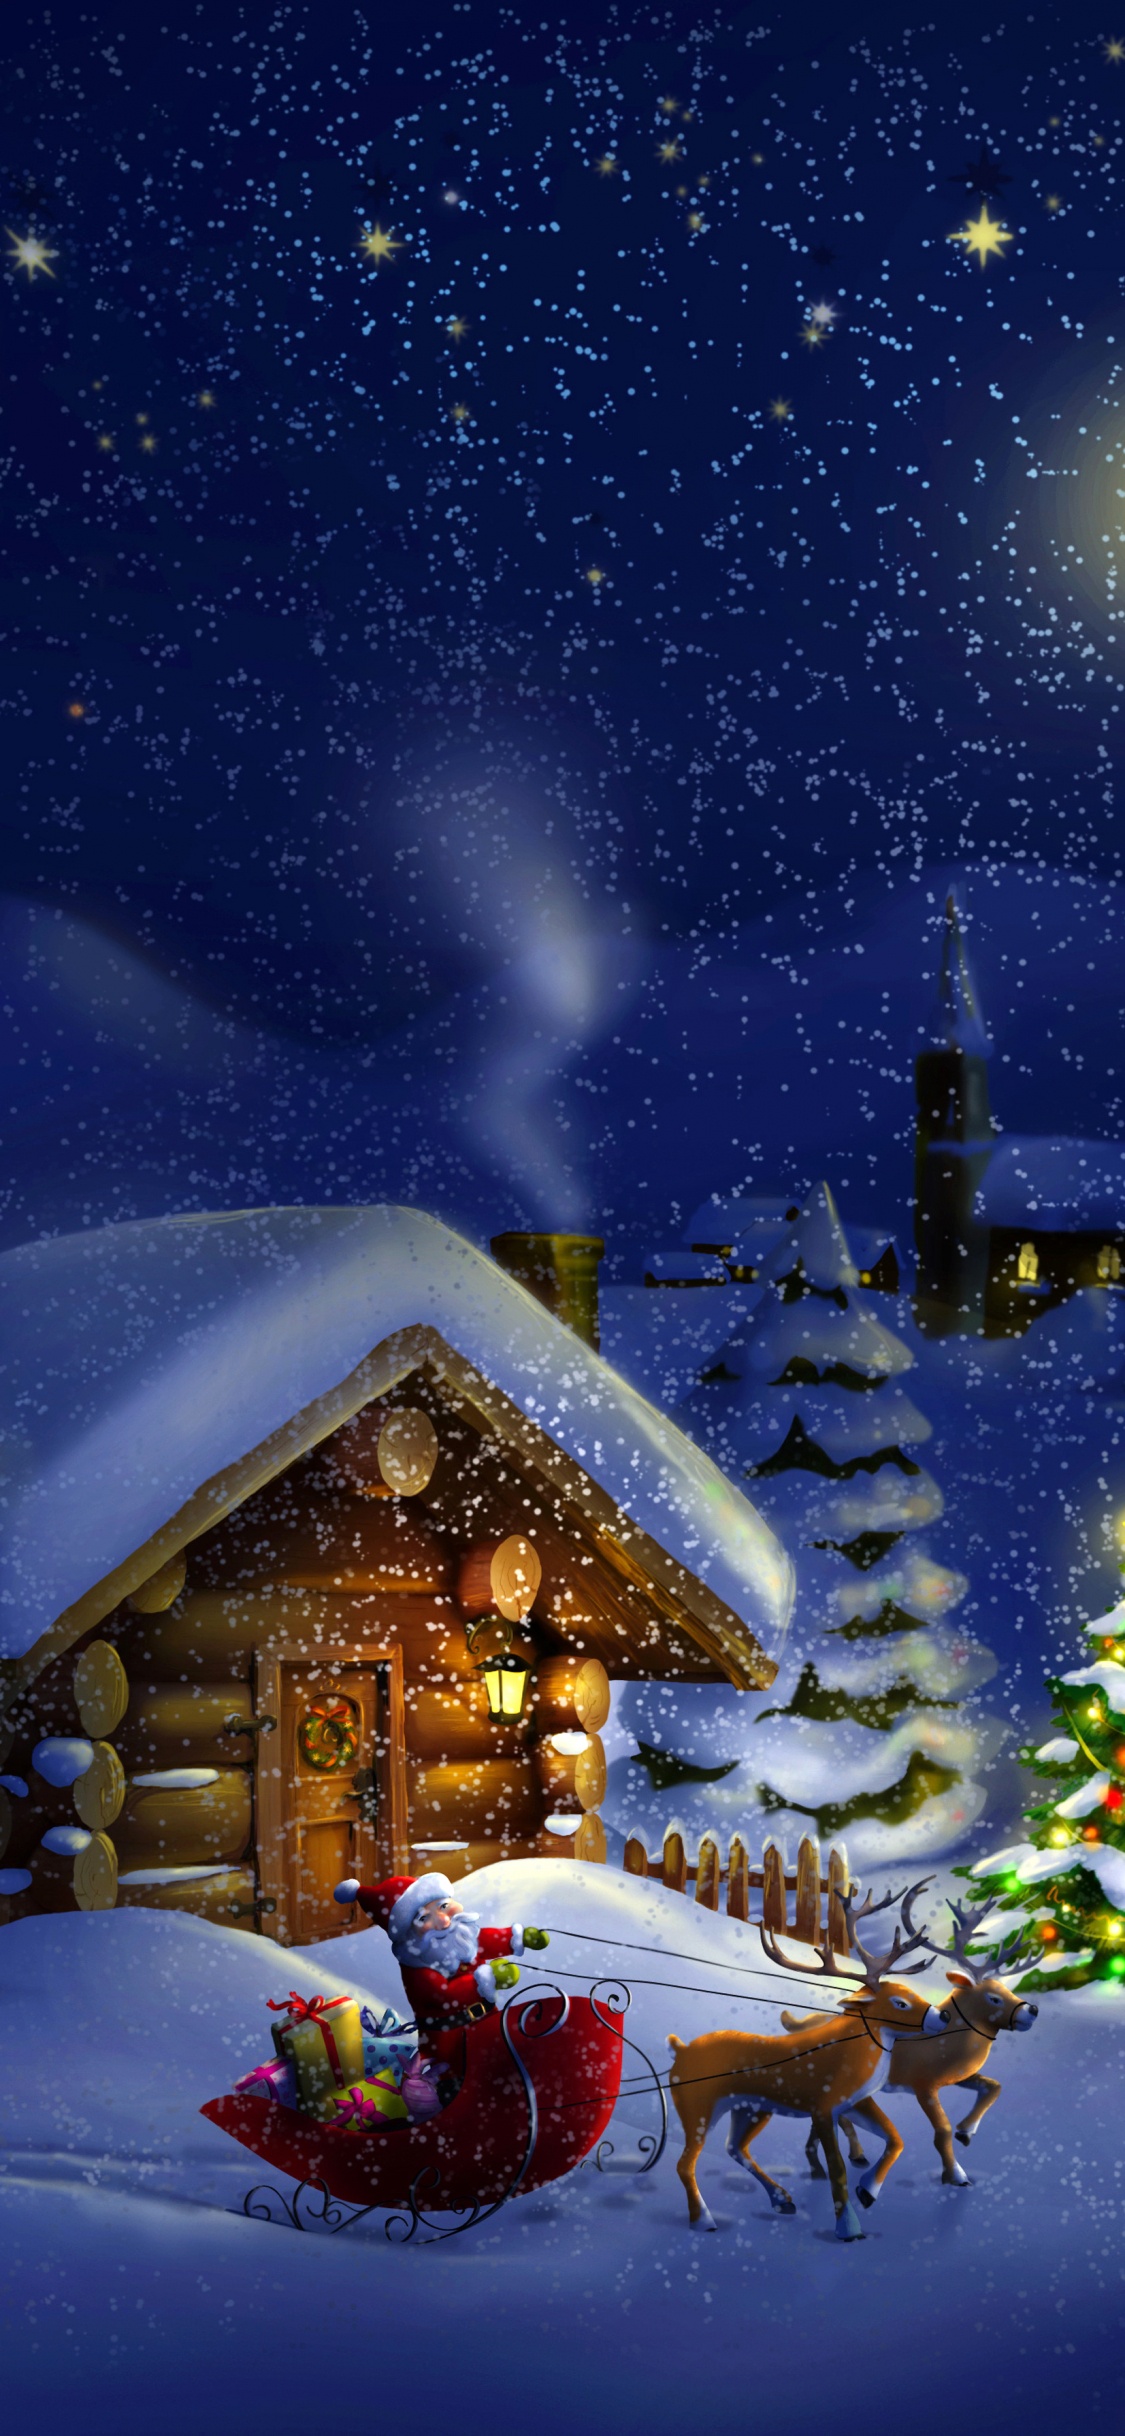 Weihnachten, Weihnachtsmann, Winter, Schnee, Nacht. Wallpaper in 1125x2436 Resolution